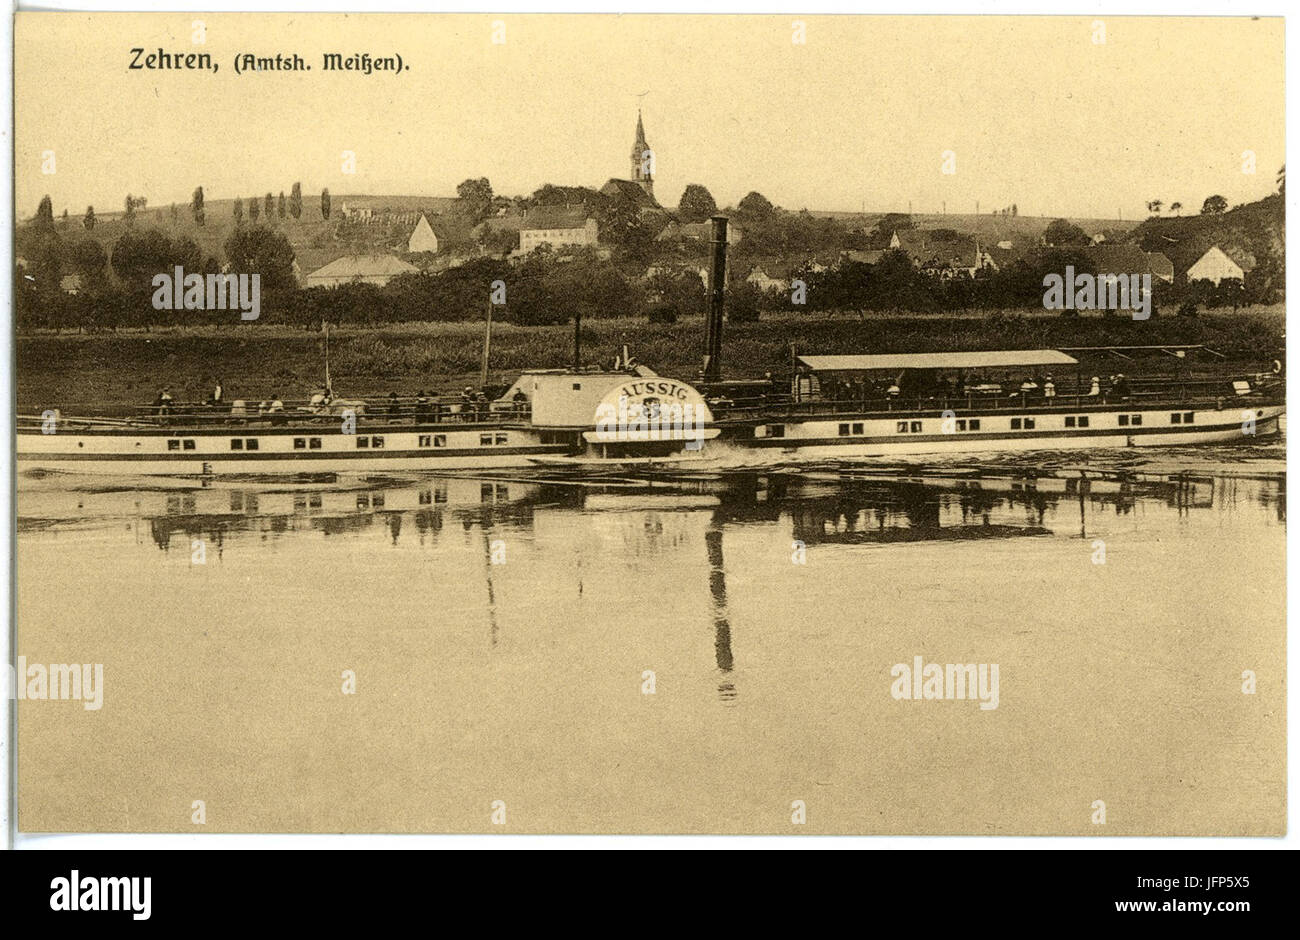 20117-Zehren-1916-Blick auf Zehren - Elbe mit Dampfer Aussig-Brück & Sohn  Kunstverlag Stock Photo - Alamy